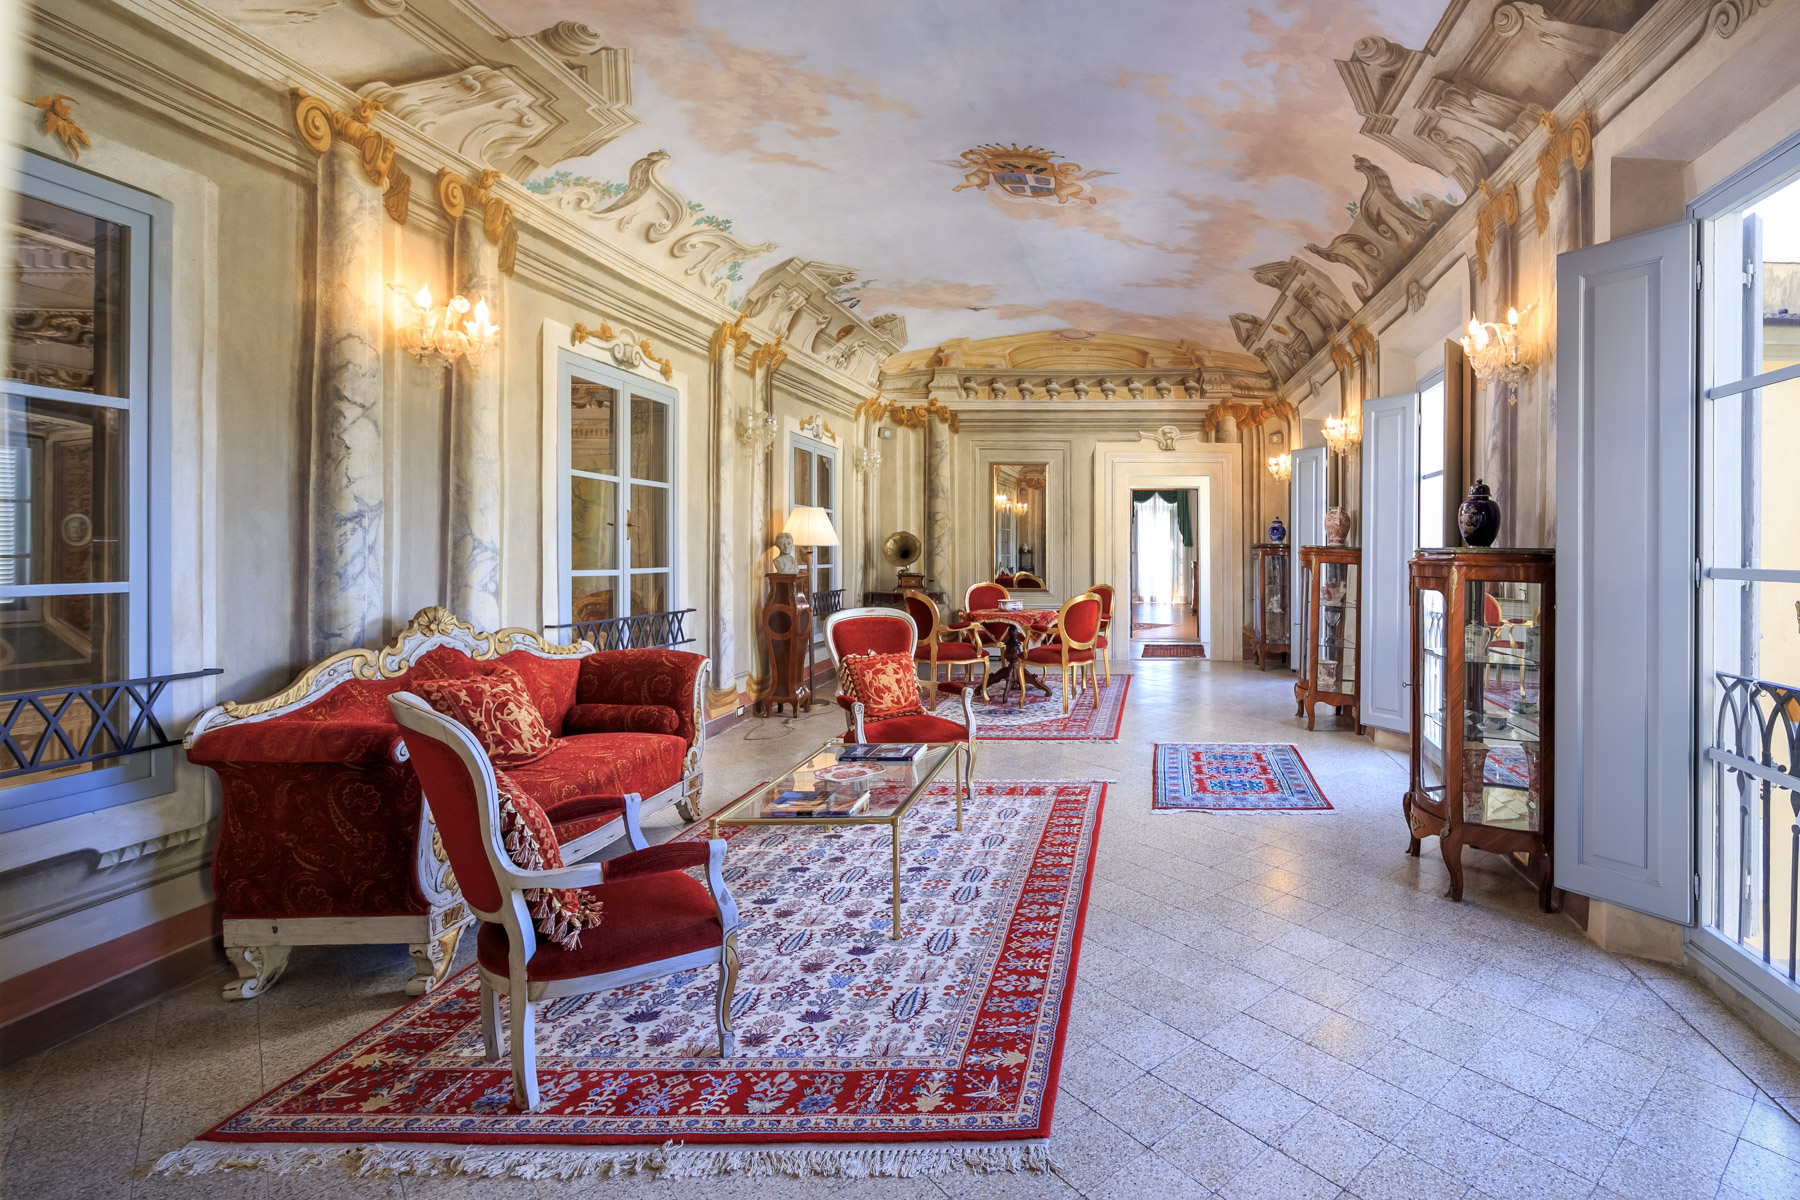 Villa in Vendita a San Giuliano Terme: 5 locali, 2755 mq - Foto 9